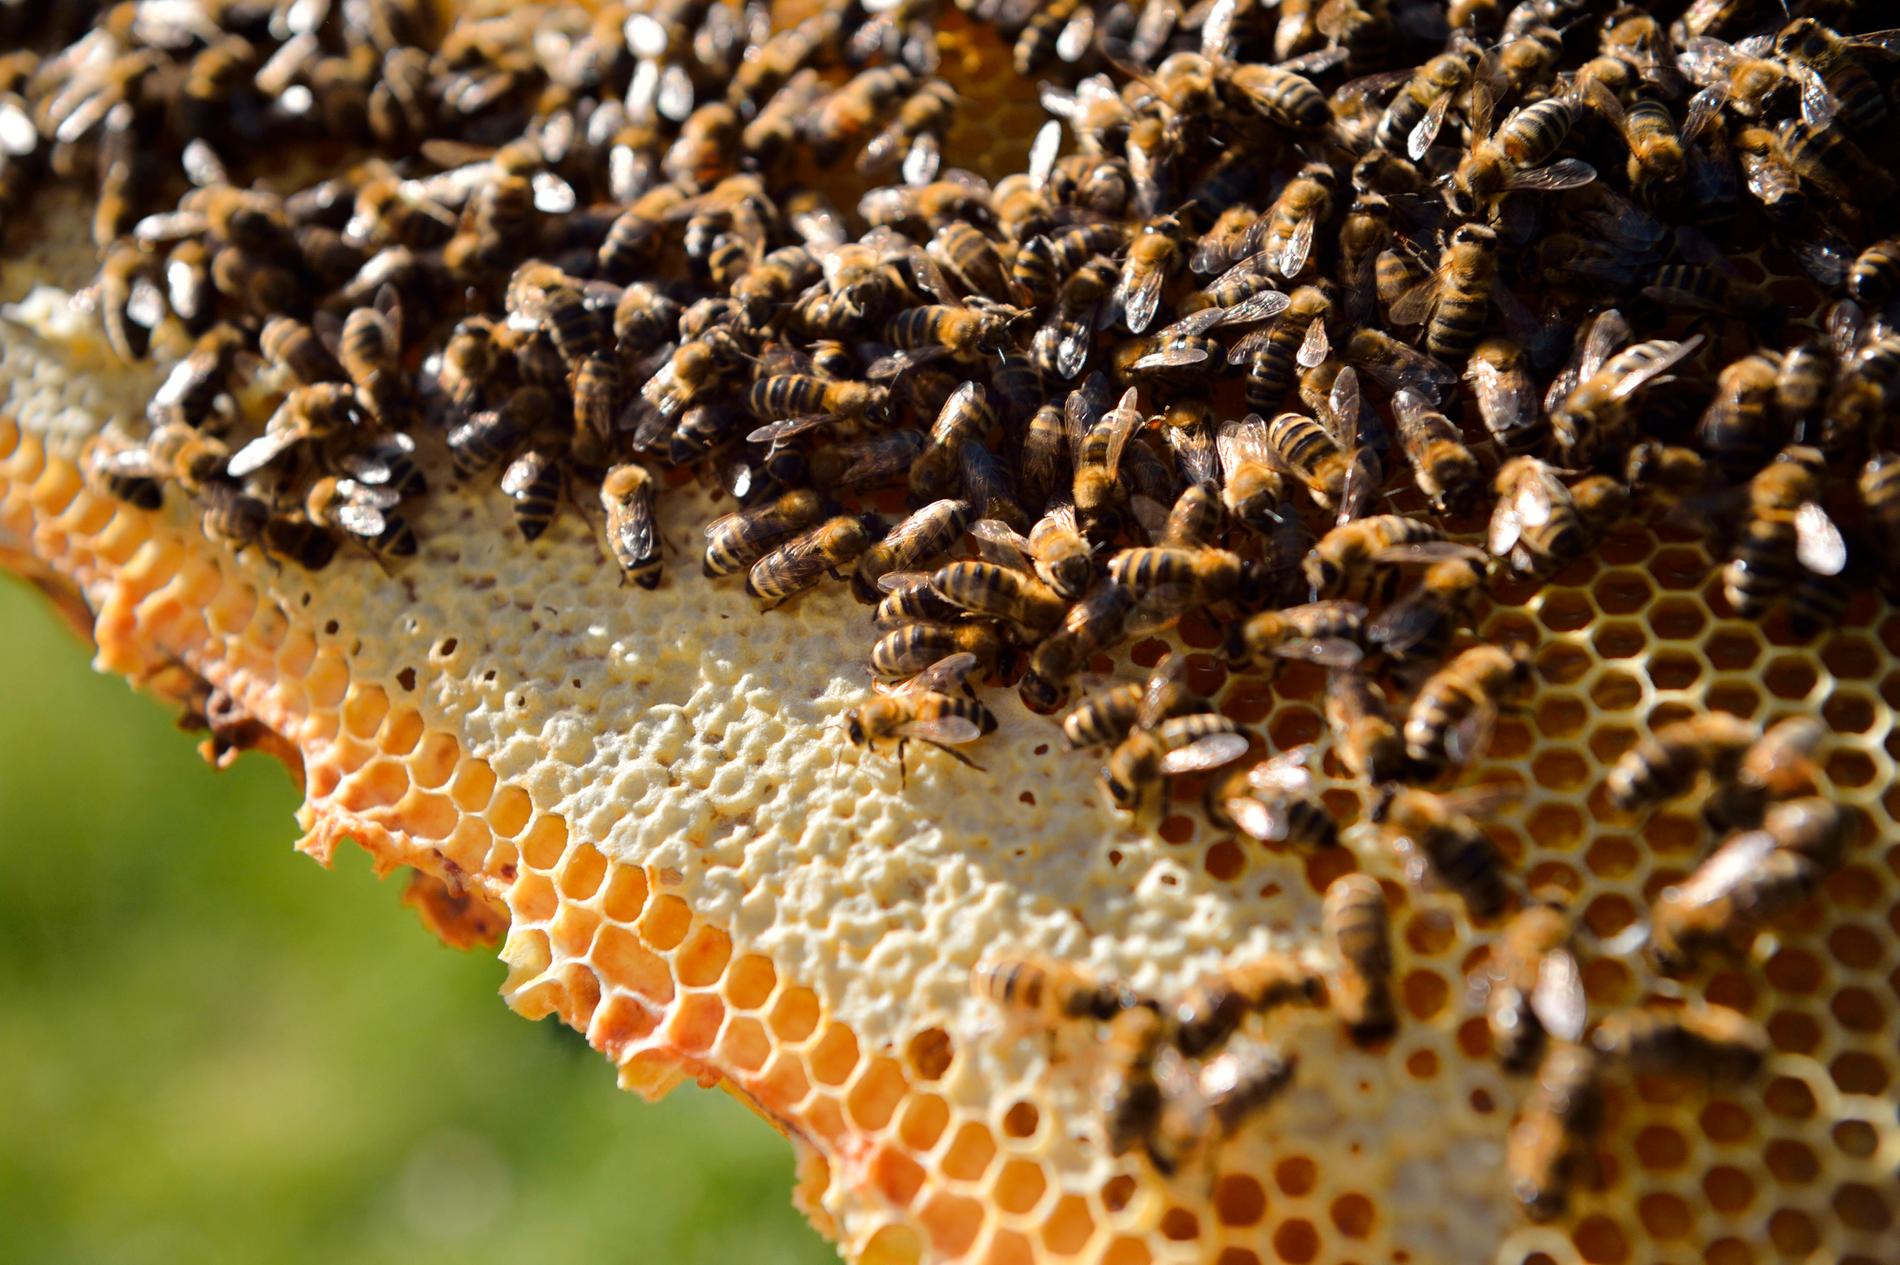 Honungsbin kan lära sig addition och subtraktion, enligt en ny australisk rapport. Arkivbild.